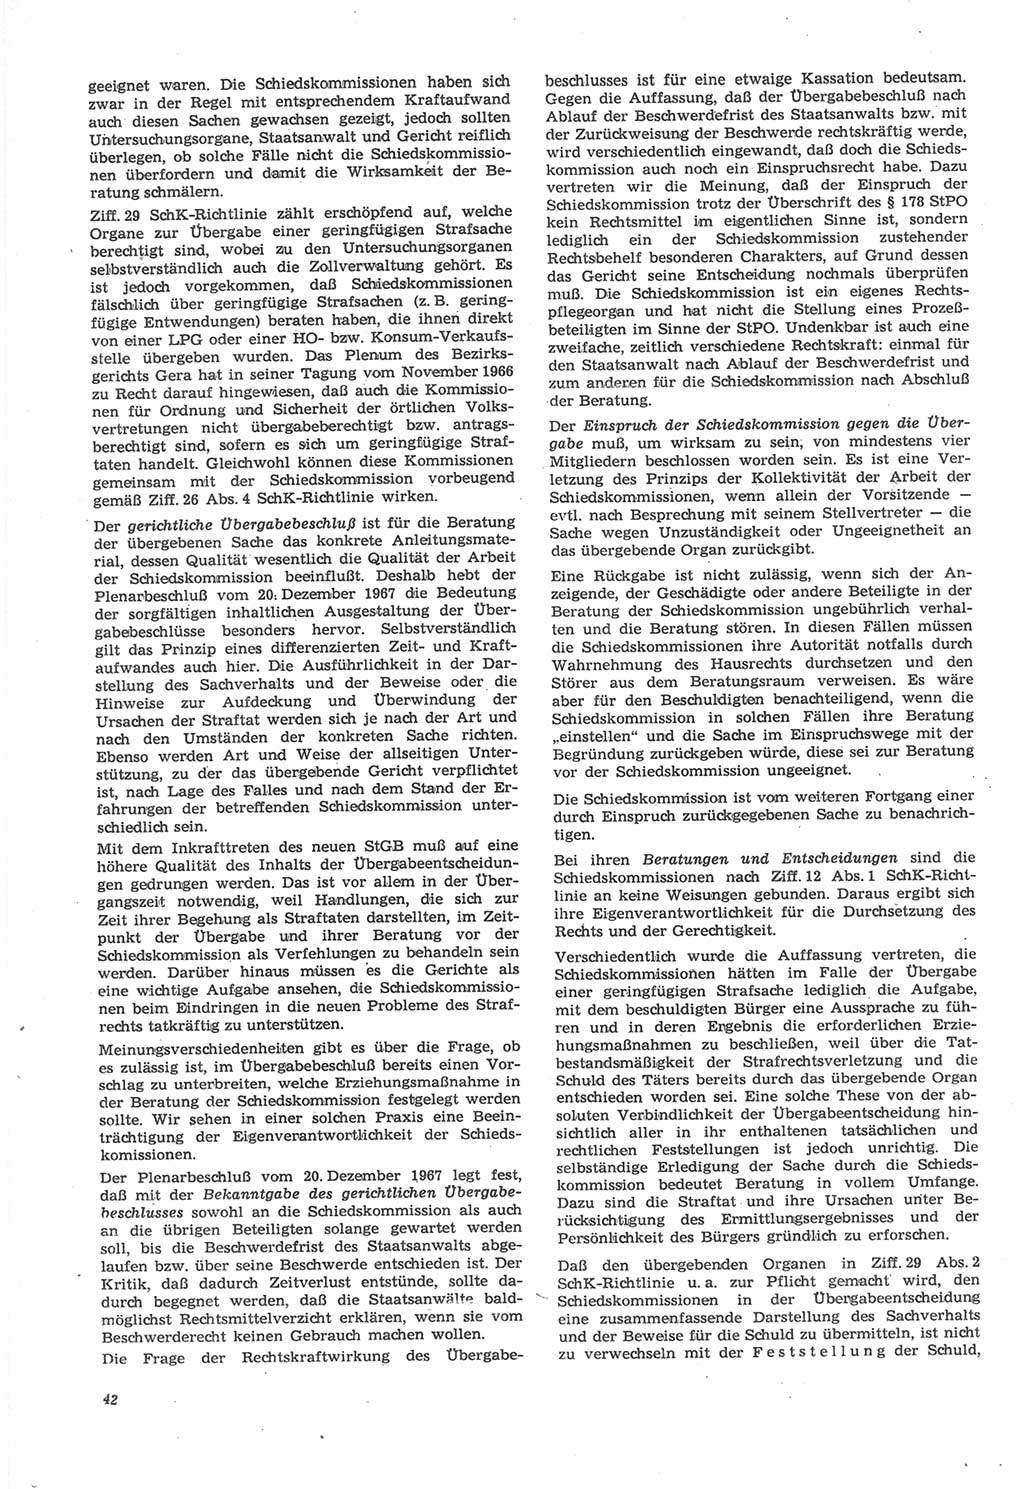 Neue Justiz (NJ), Zeitschrift für Recht und Rechtswissenschaft [Deutsche Demokratische Republik (DDR)], 22. Jahrgang 1968, Seite 42 (NJ DDR 1968, S. 42)